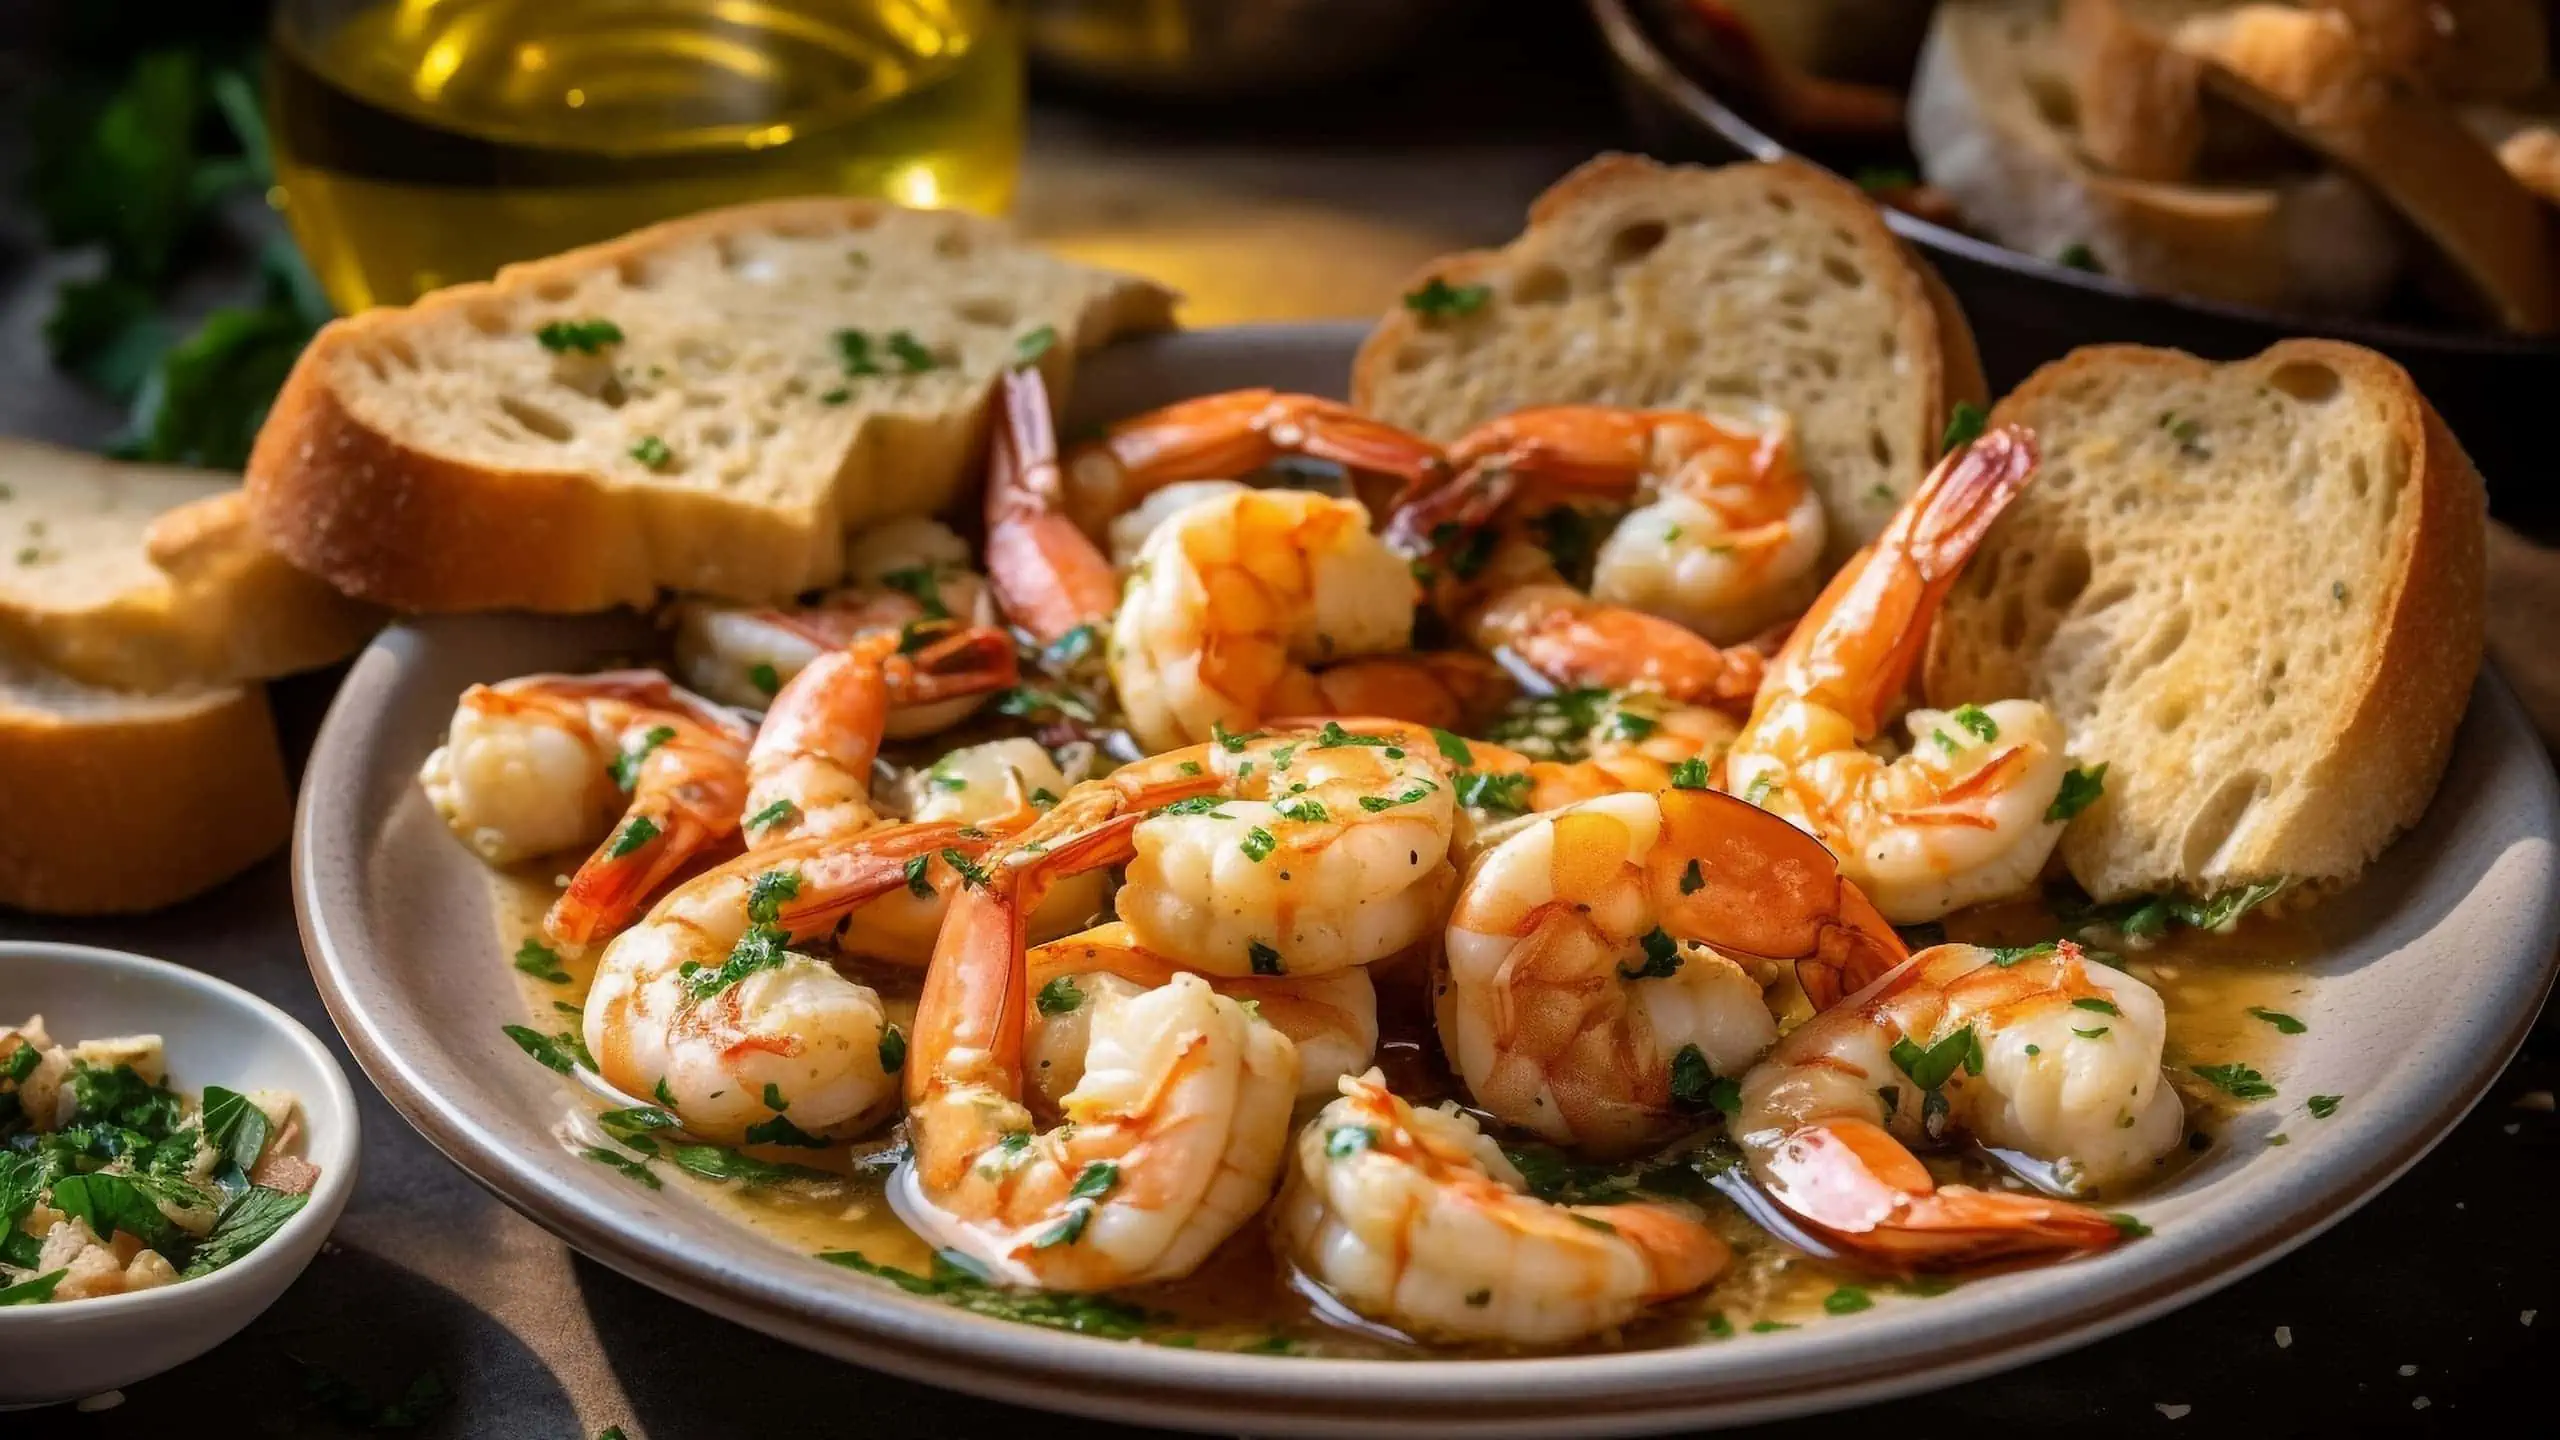 Our colossal shrimp recipe